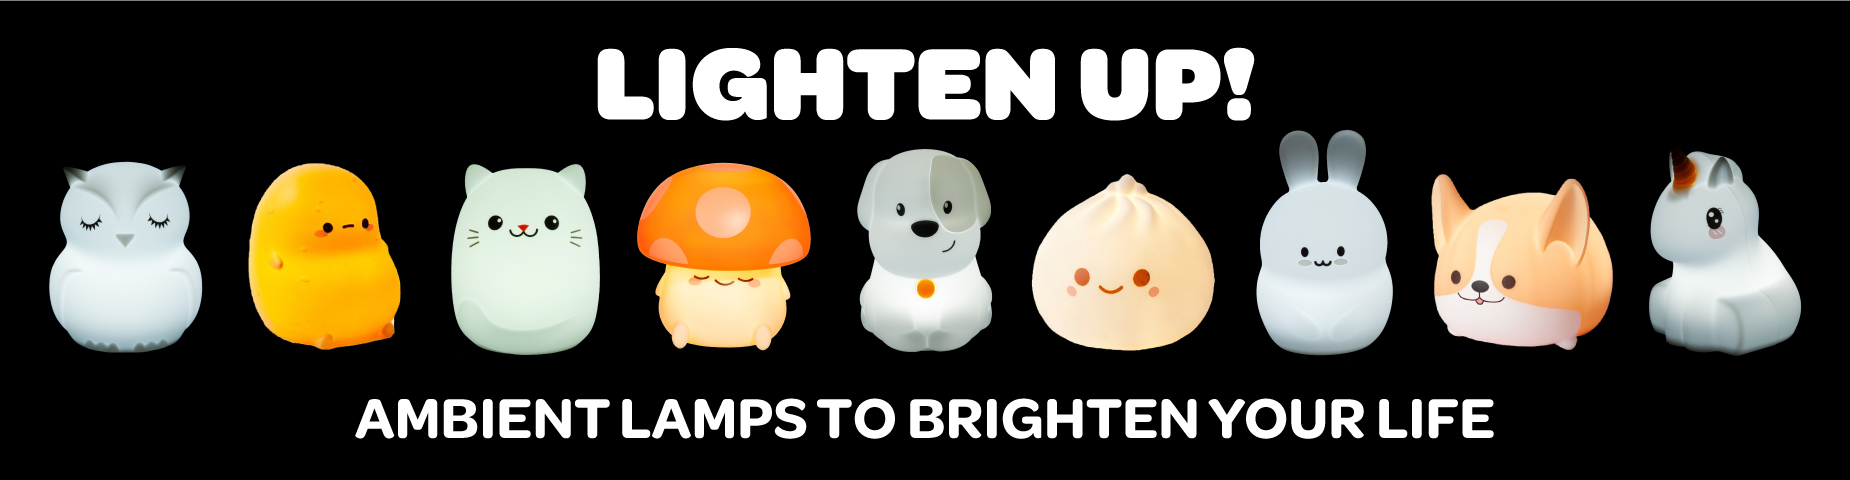 LIGHTEN UP! Ambient lamps to brighten your life